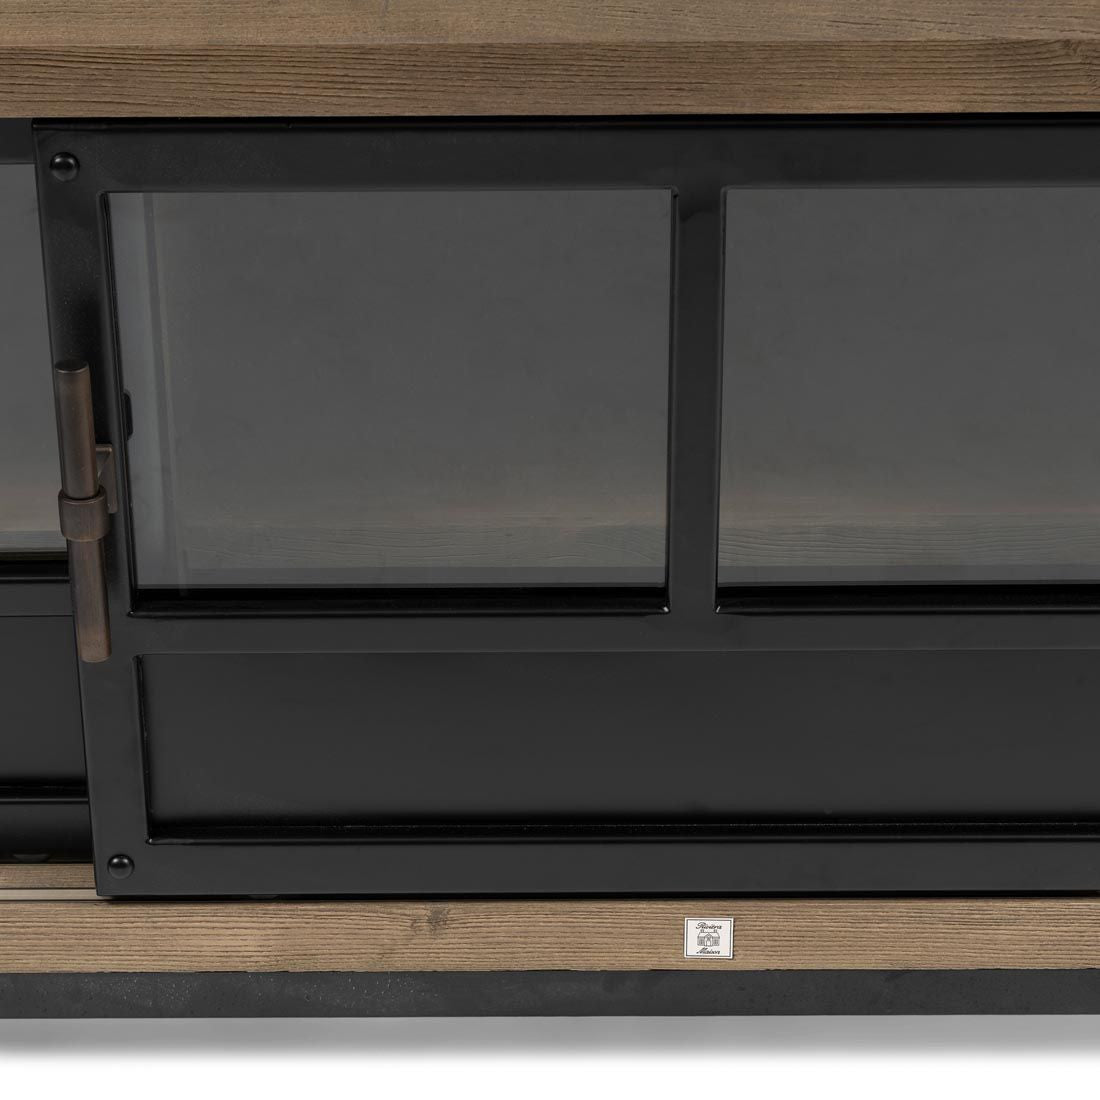 The Hoxton Flatscreen Dresser XL